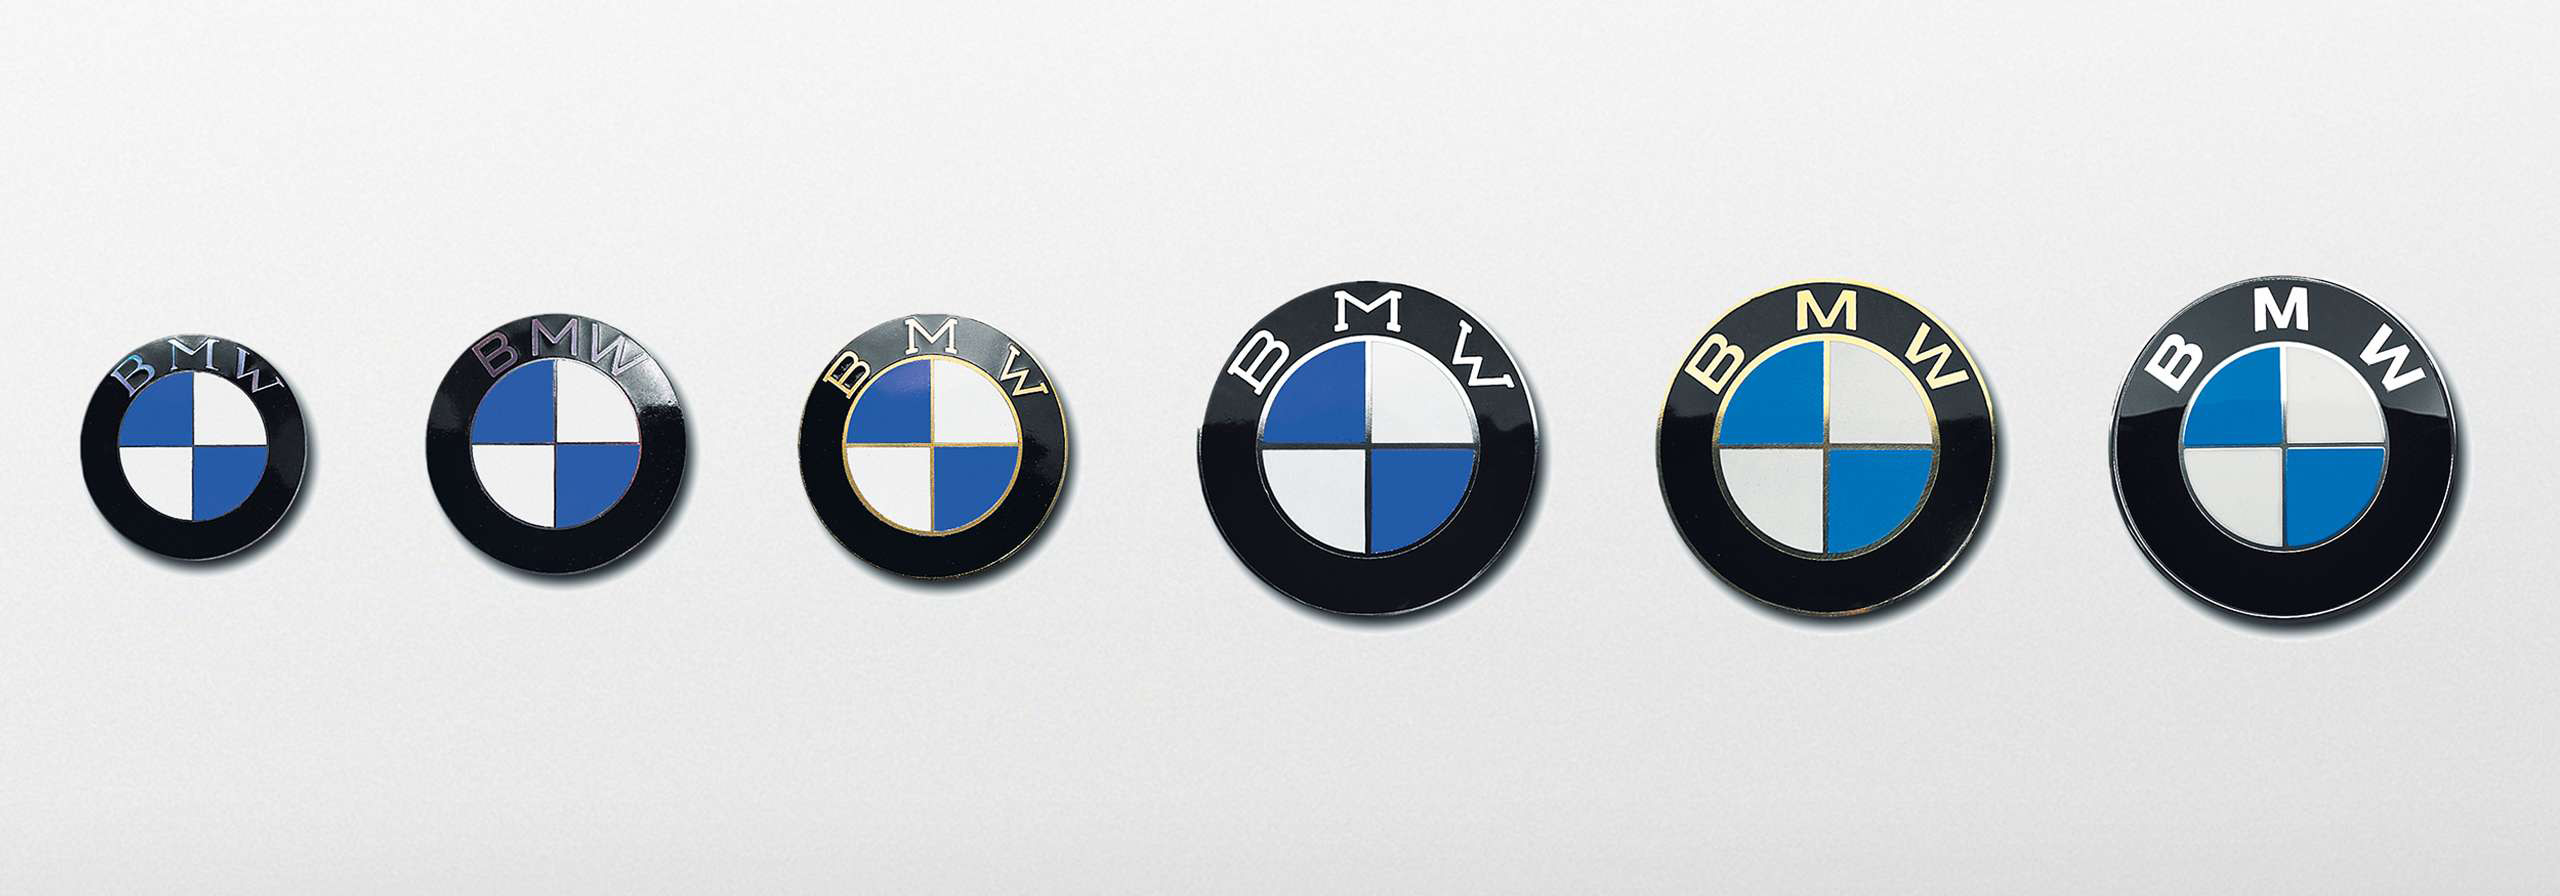 BMW Century City